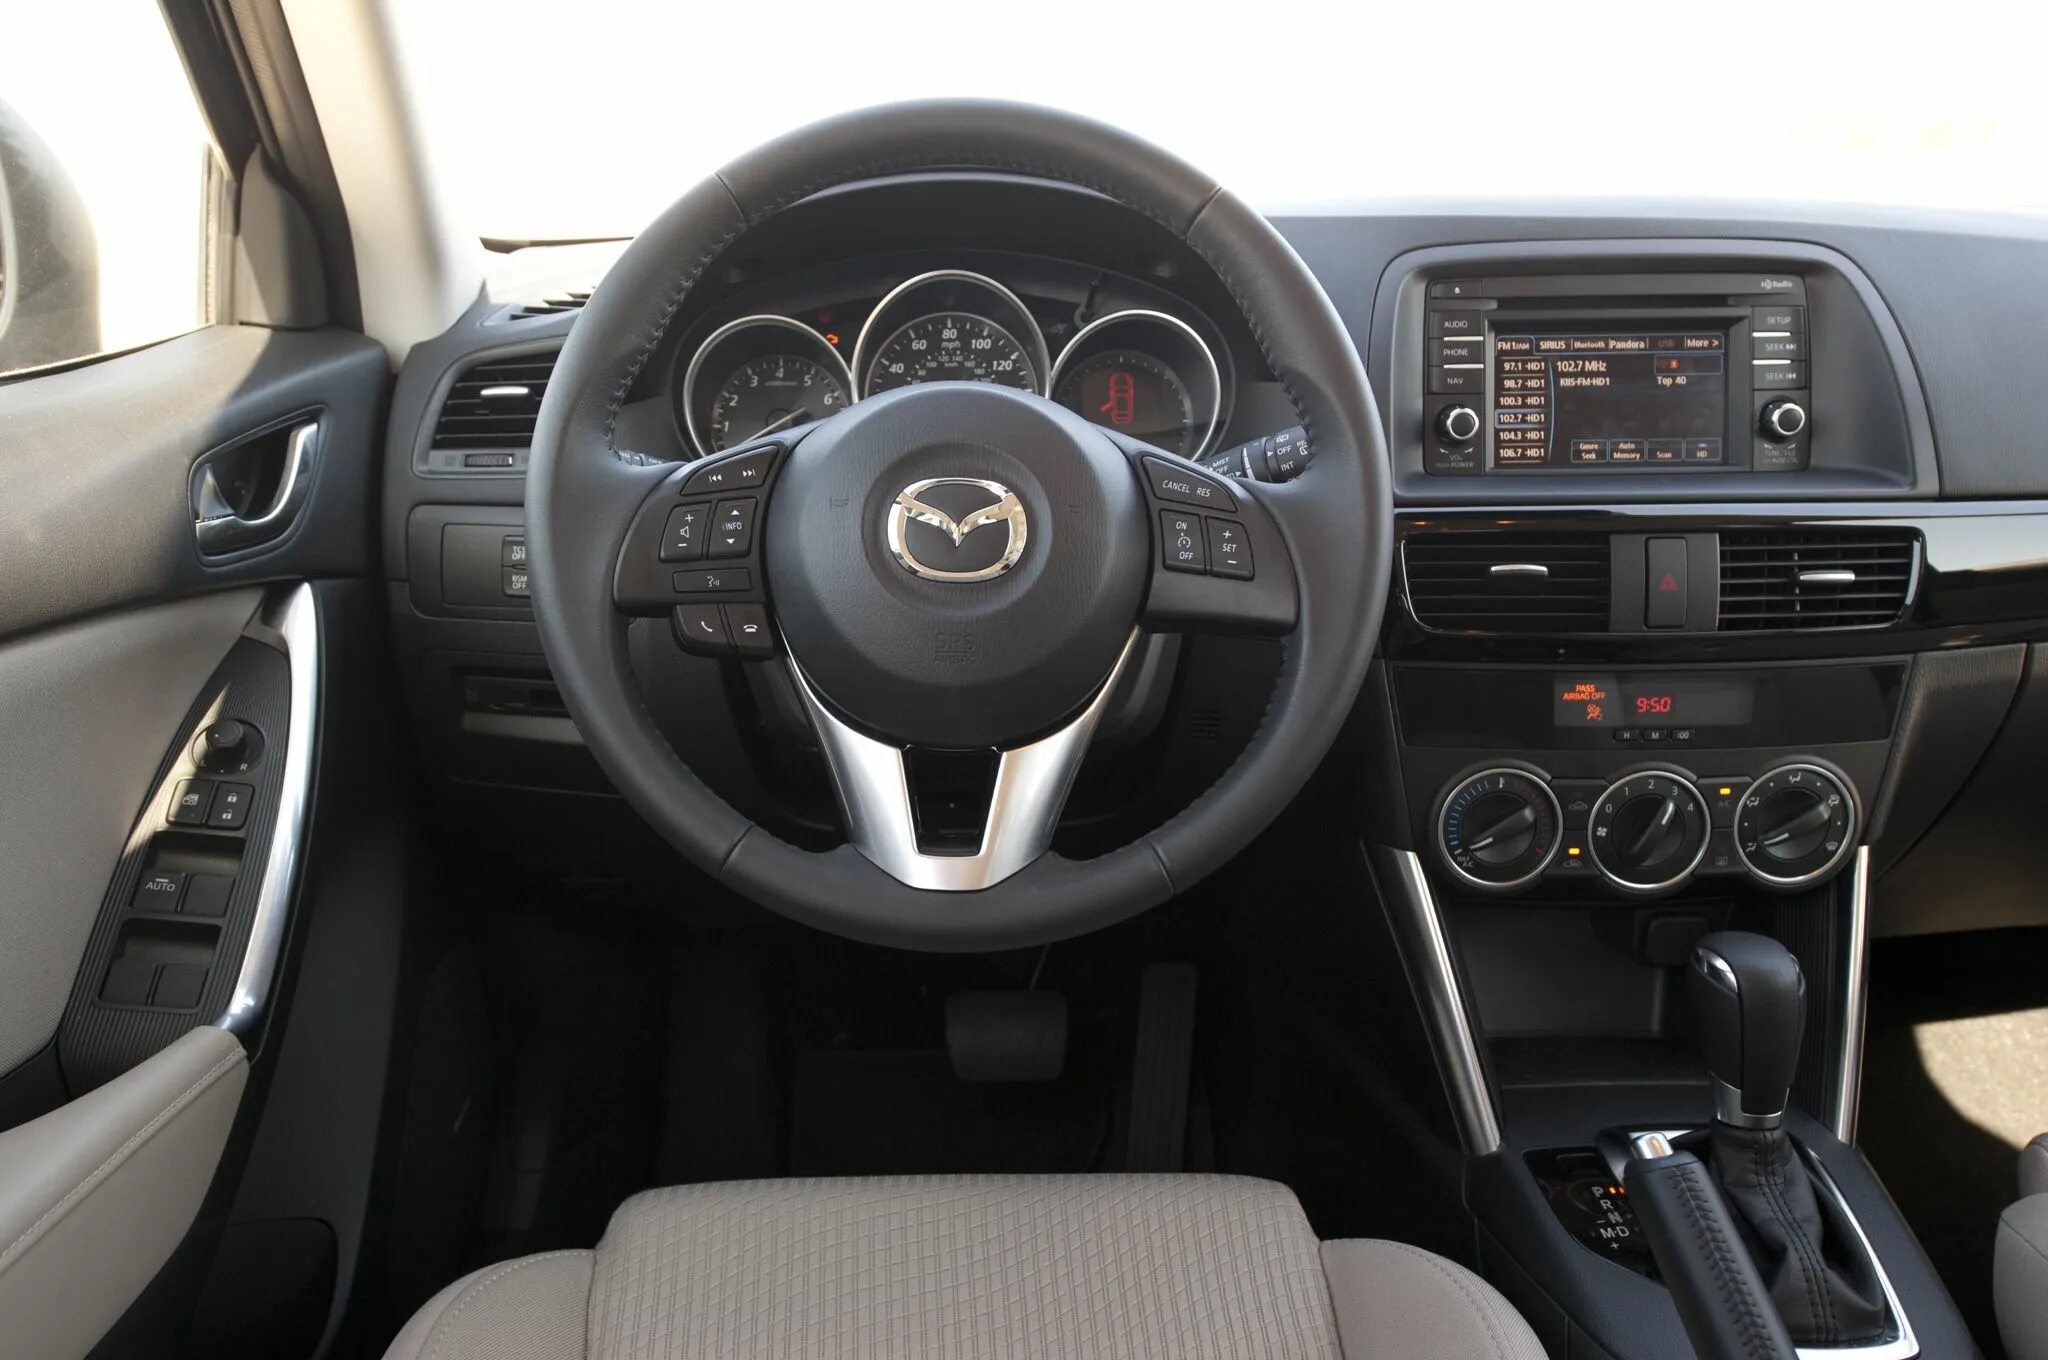 Mazda CX-5 2015. Mazda CX 5 2015 Interior. Mazda CX 5 2015 салон. Mazda CX 5 2016 салон. Управление маздой сх 5